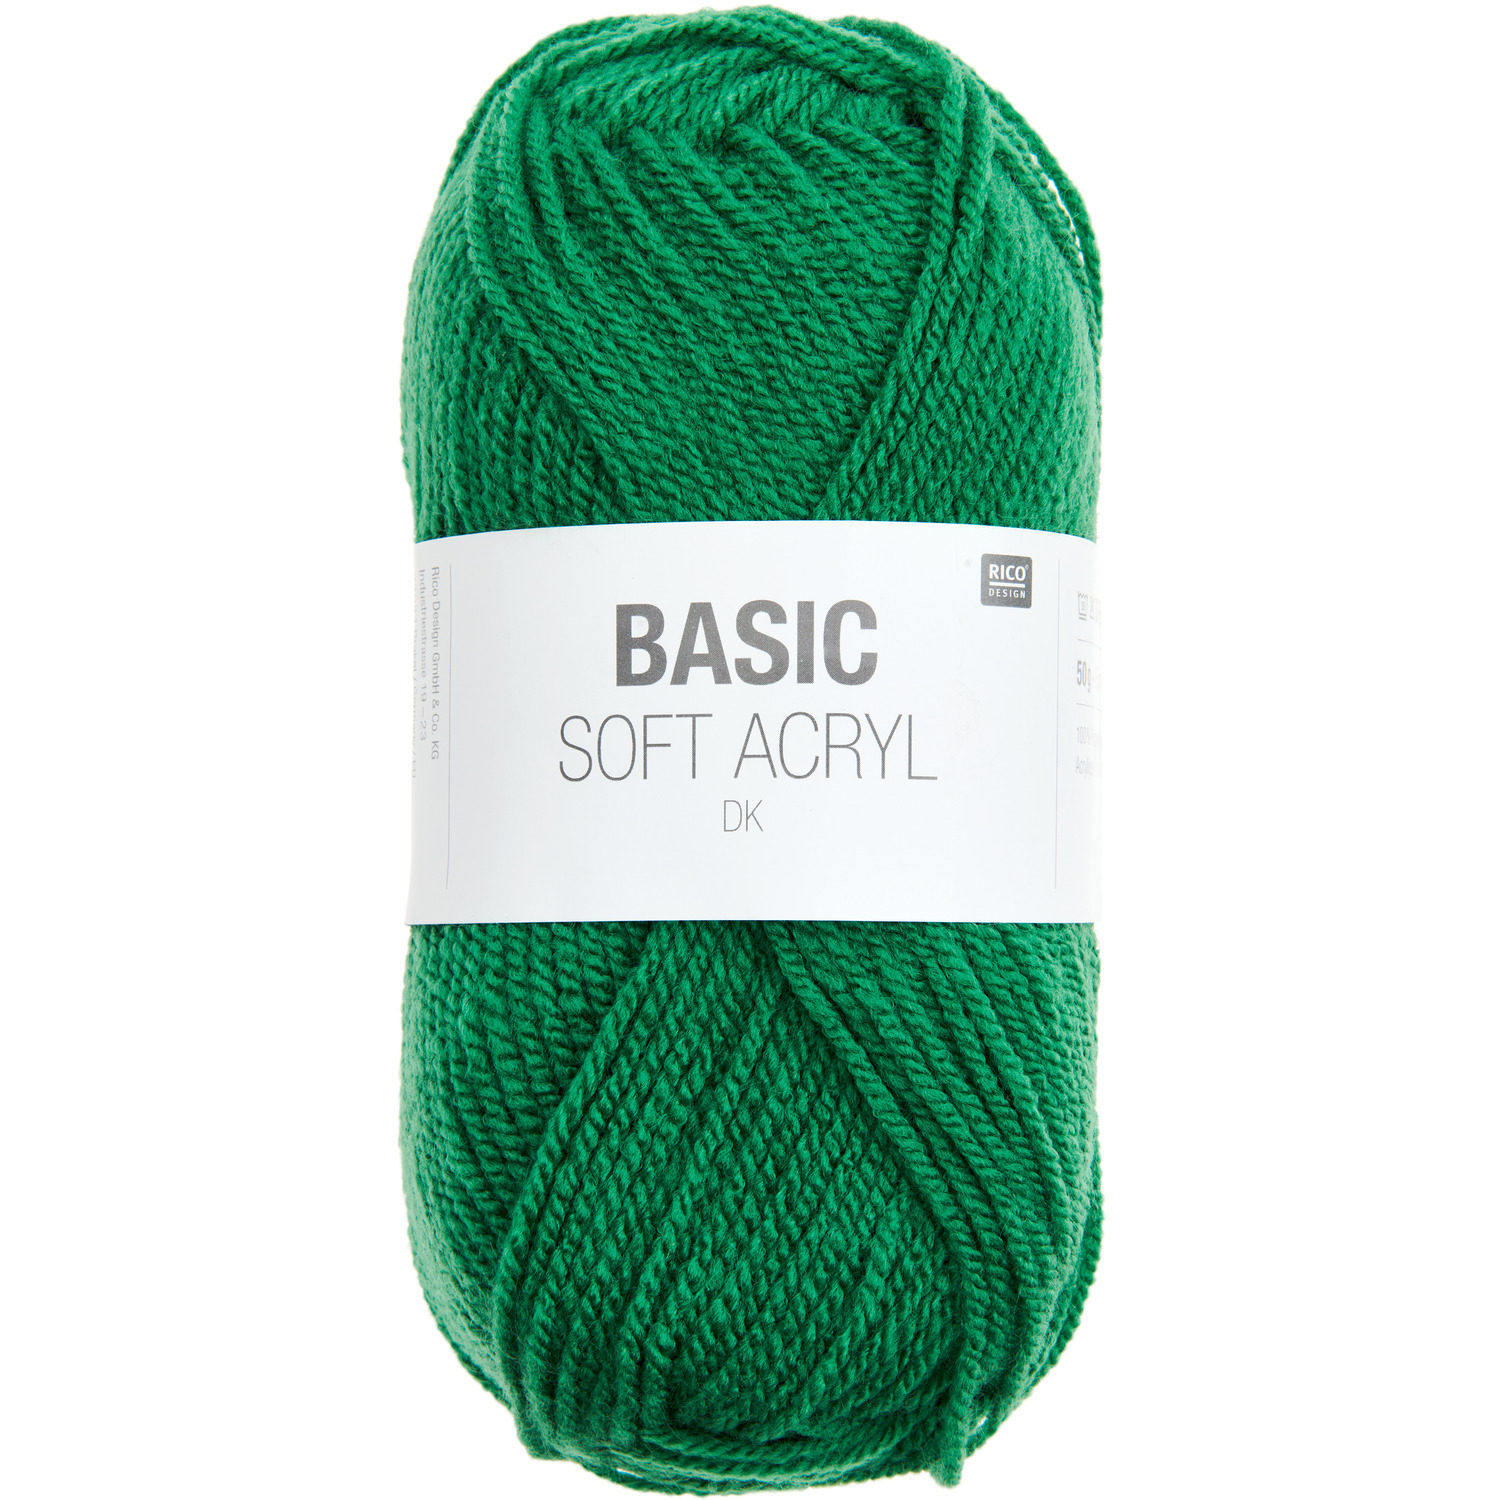 Basic Soft Acryl dk